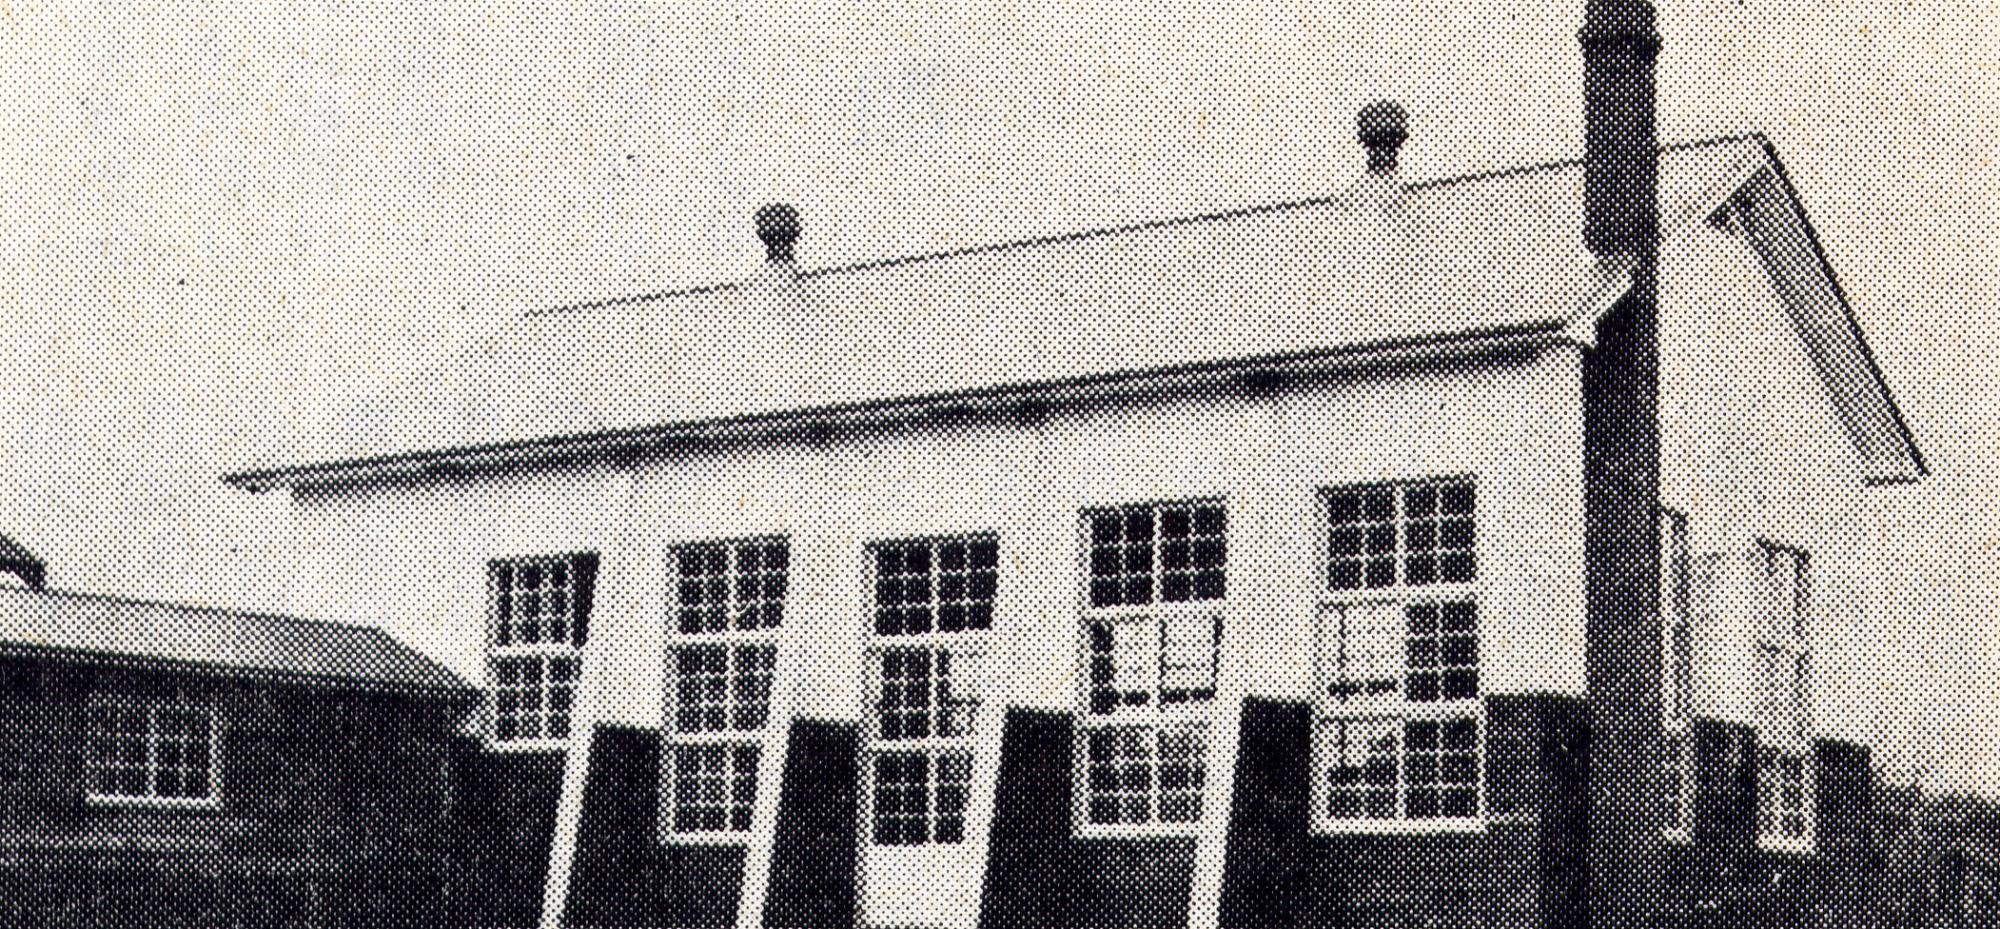 右外側に大きな煙突が設置された旧仲線小学校体育館の白黒写真